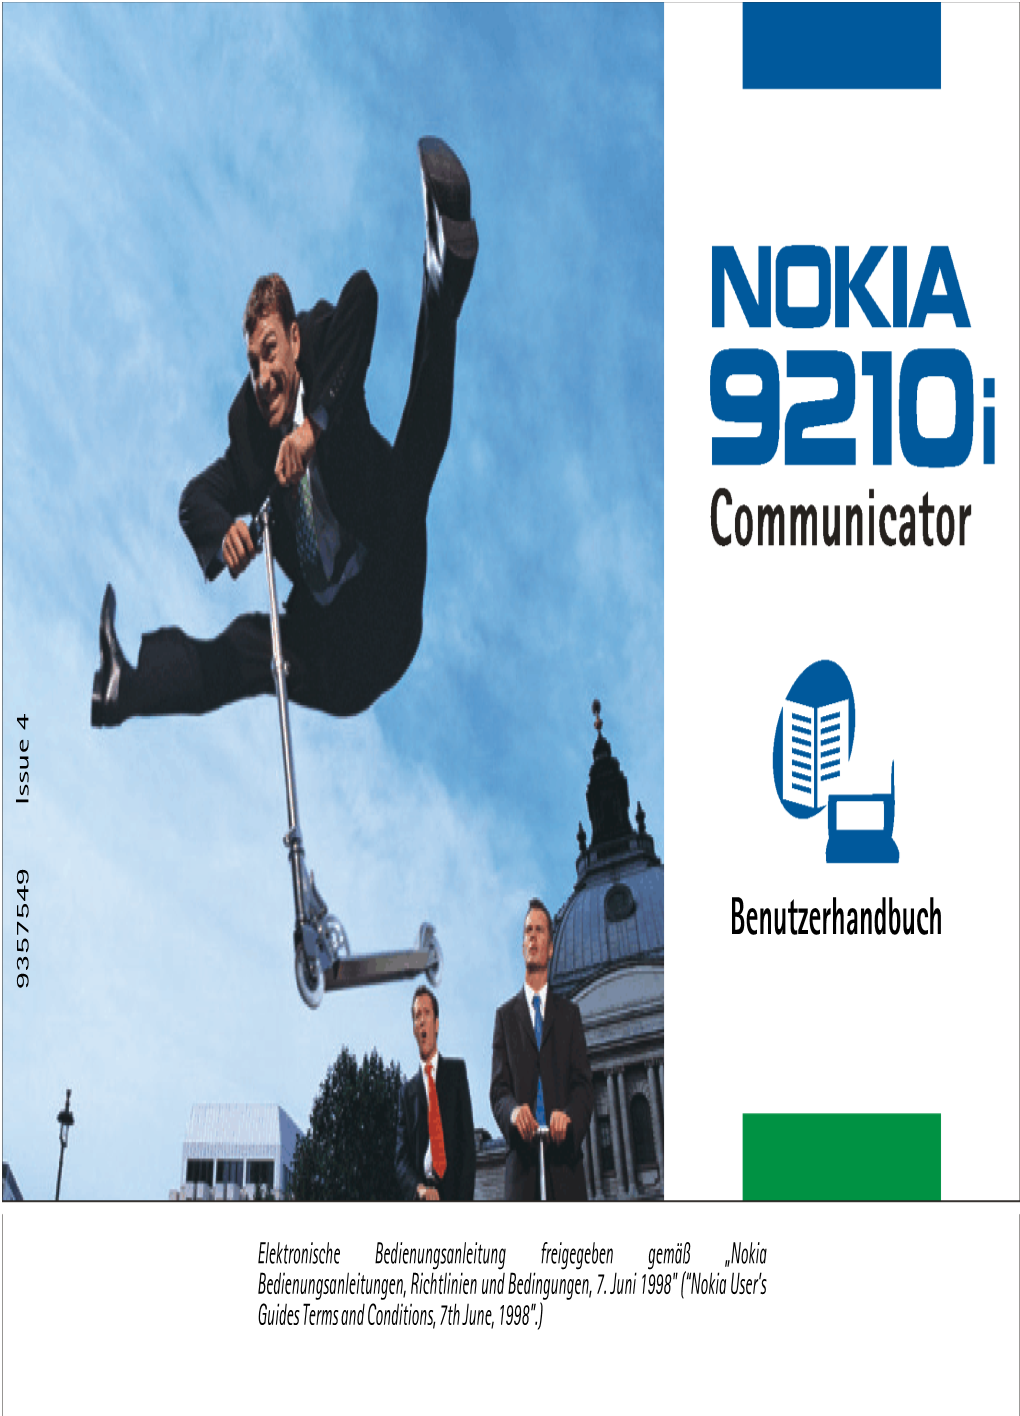 Nokia 9210I Communicator Entschieden Haben